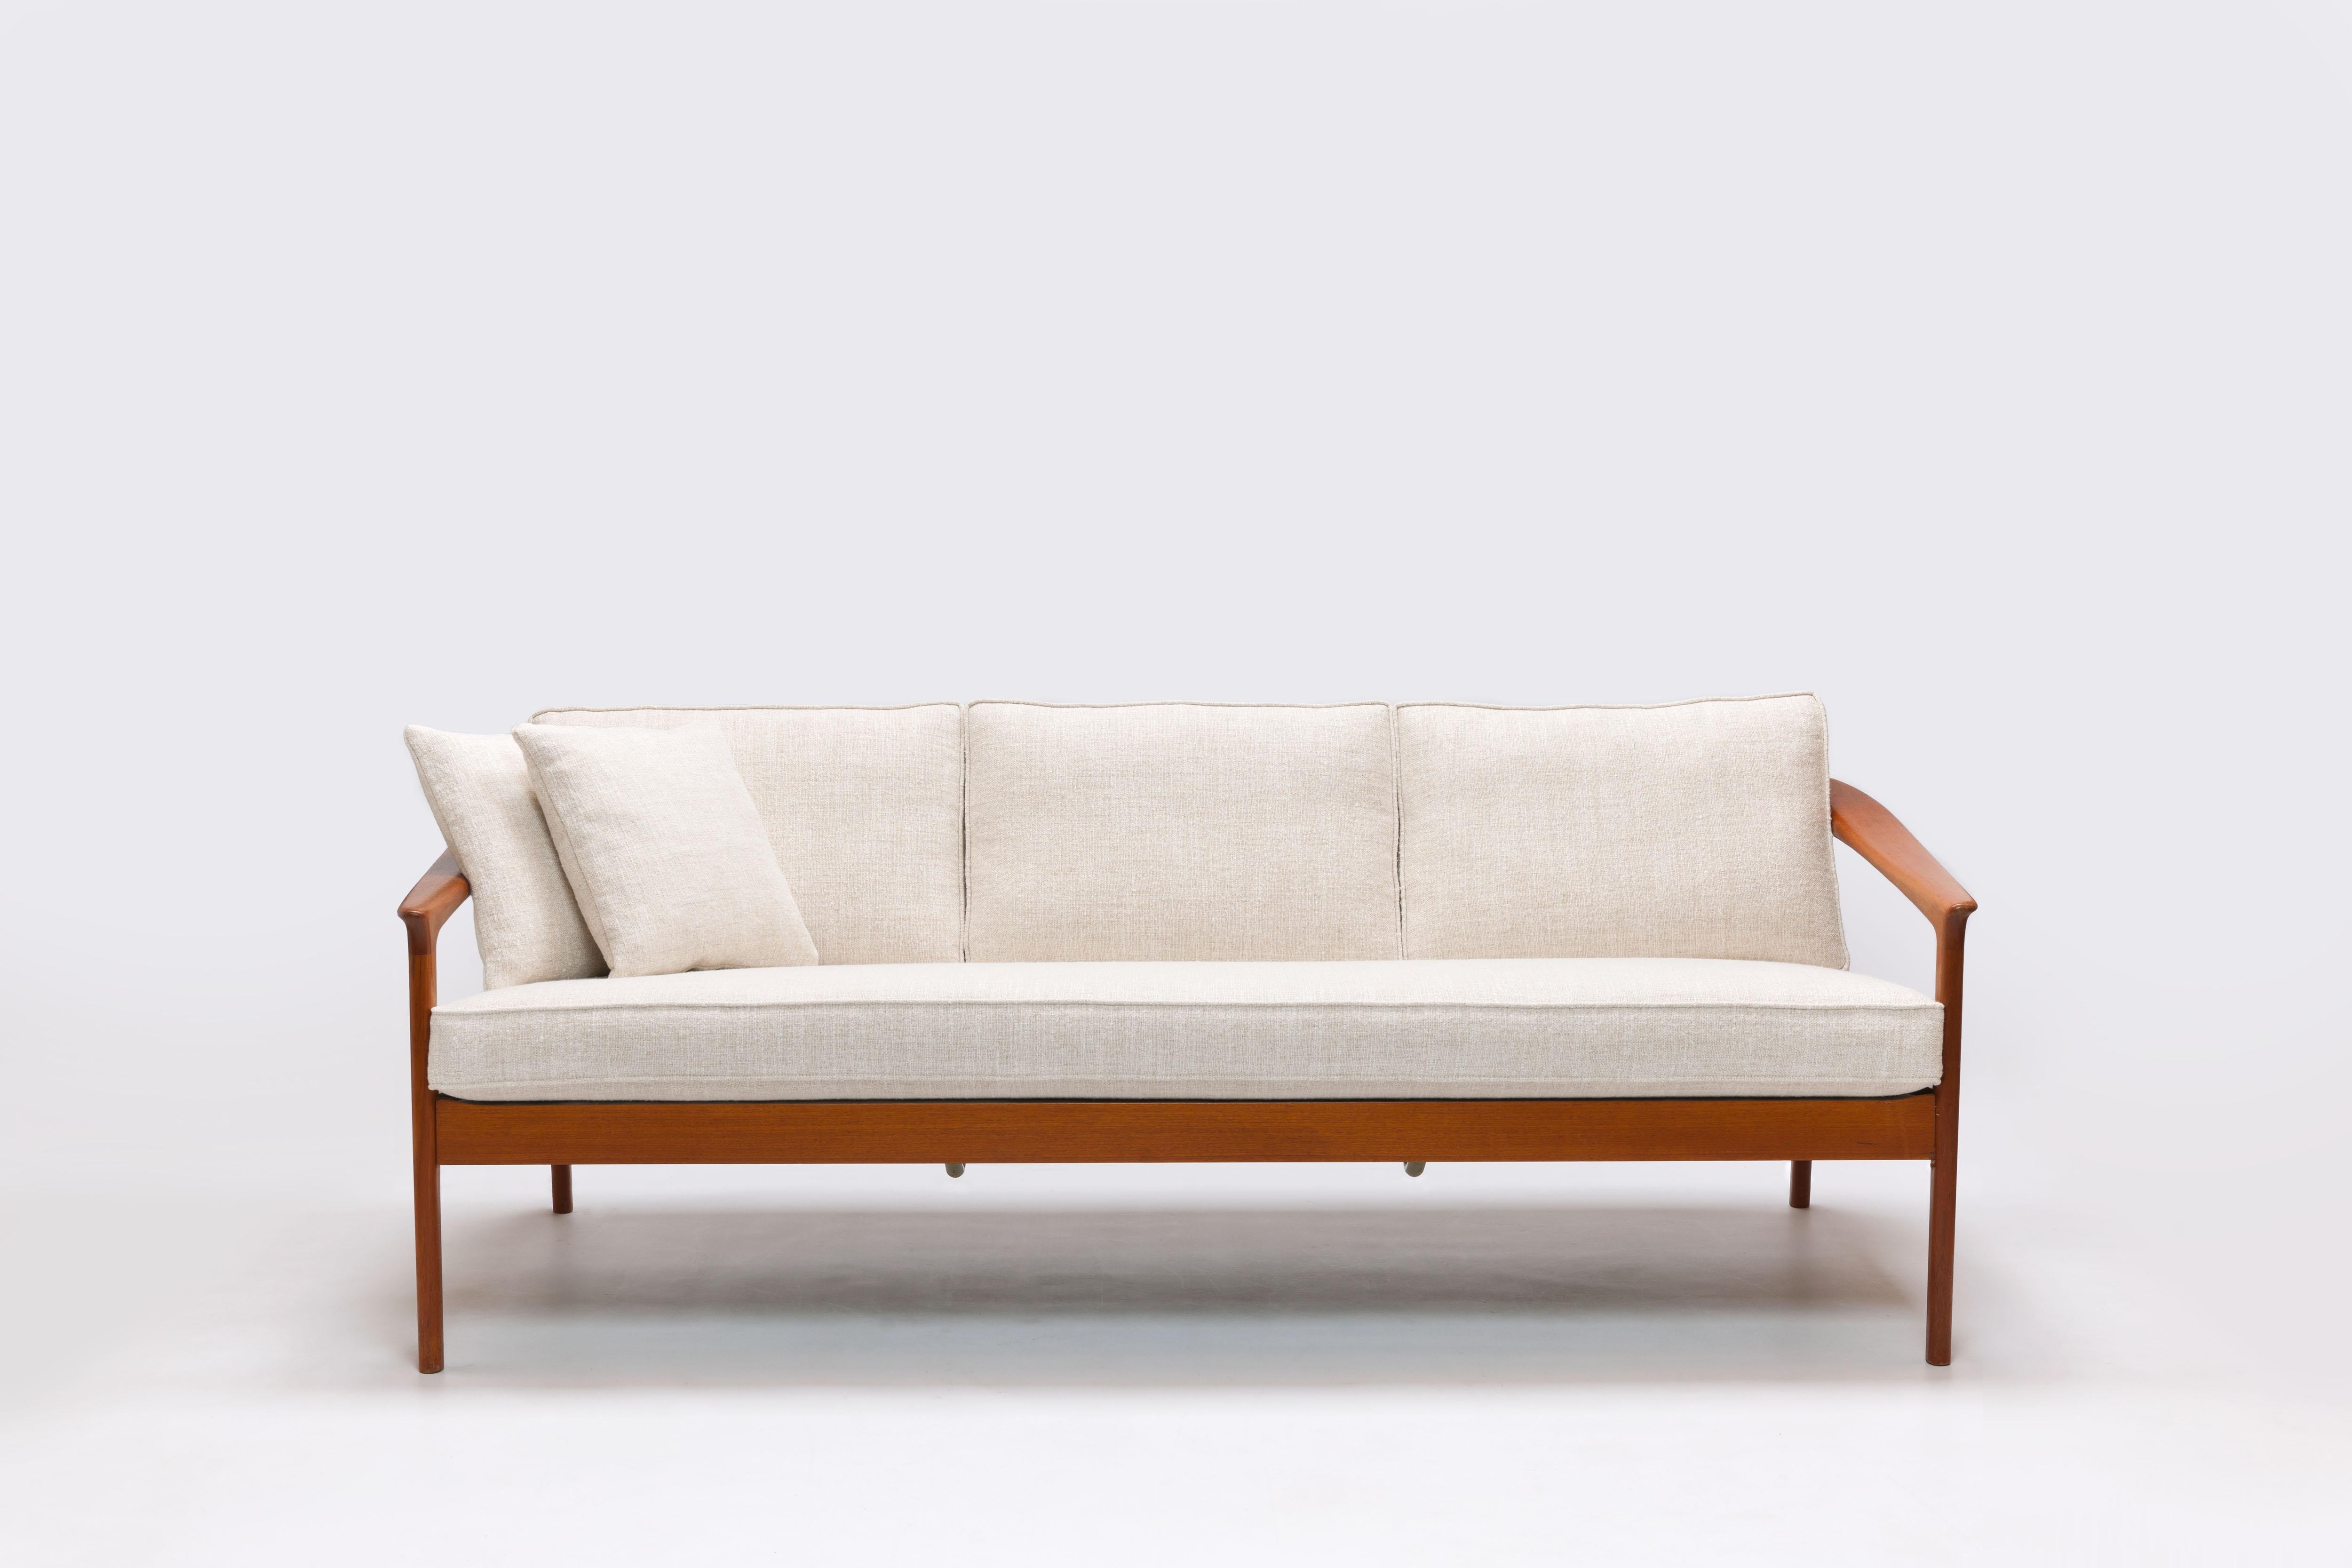 Scandinavian Modern Refined Folke Ohlsson 3-Seat Sofa for Bodafors Sweden, All New Upholstery